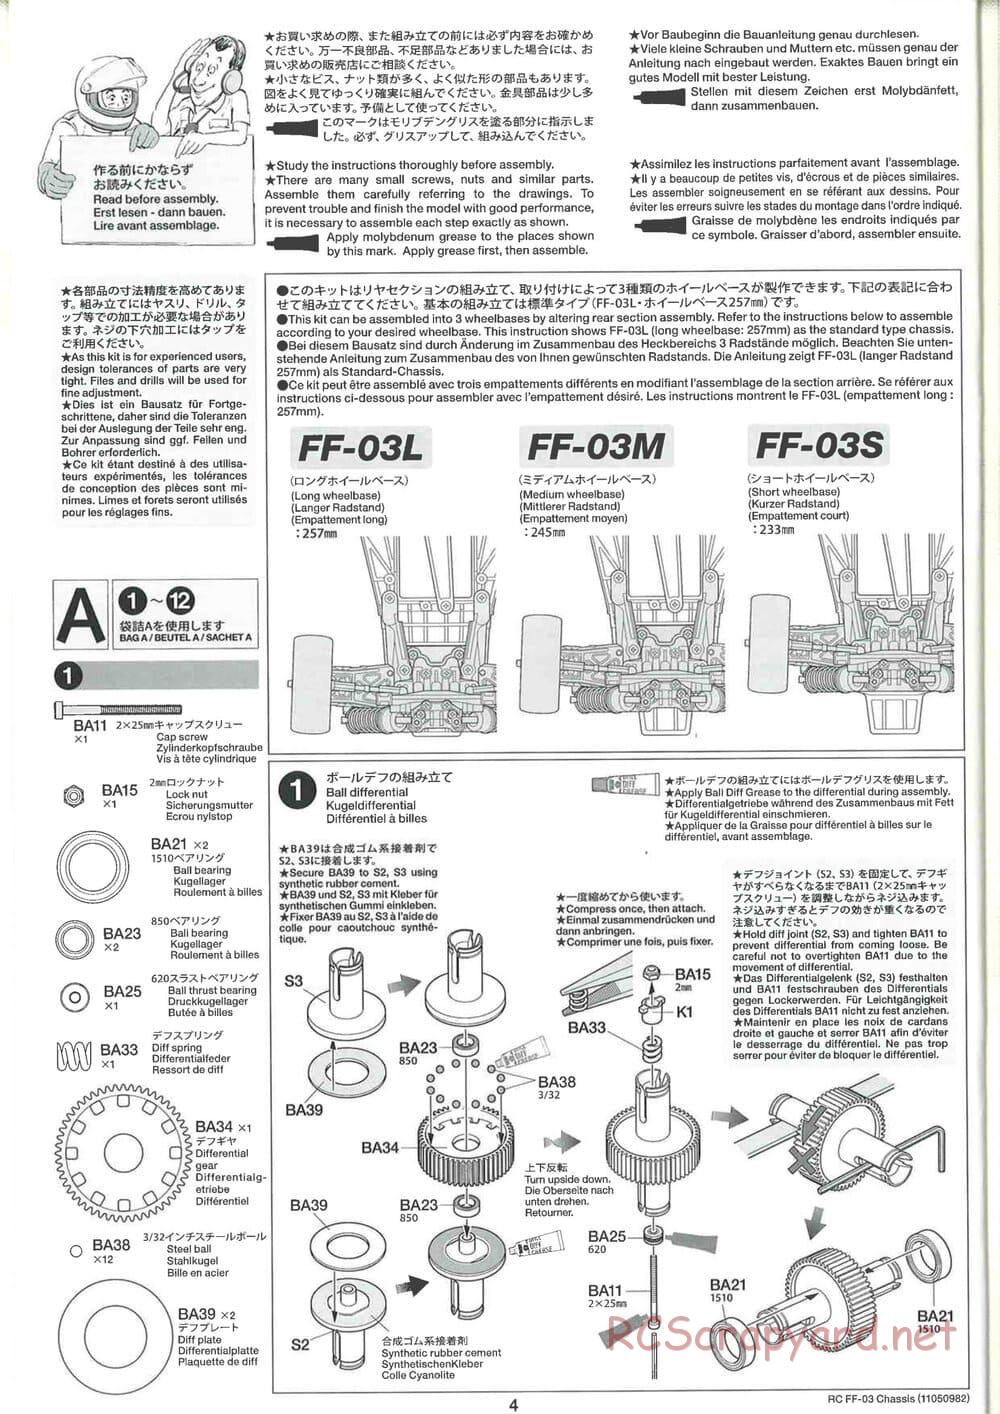 Tamiya - Honda CR-Z - FF-03 Chassis - Manual - Page 4